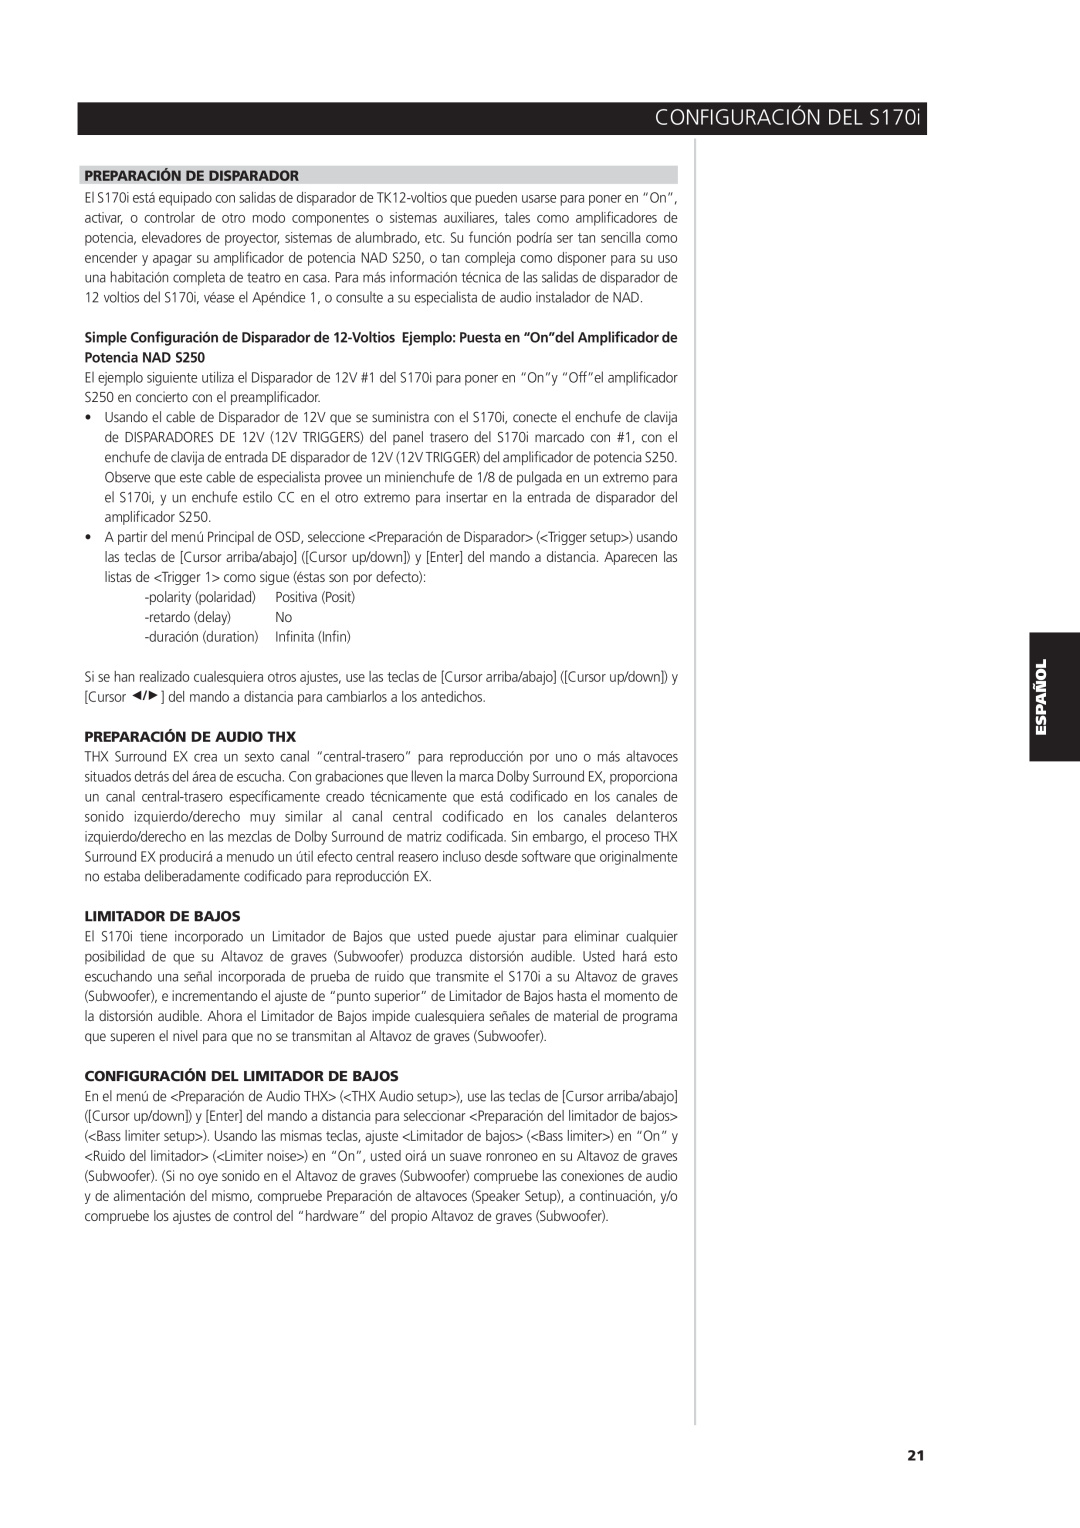 NAD S170iAV owner manual Preparación De Disparador, Potencia NAD S250, Preparación De Audio Thx, Limitador De Bajos 